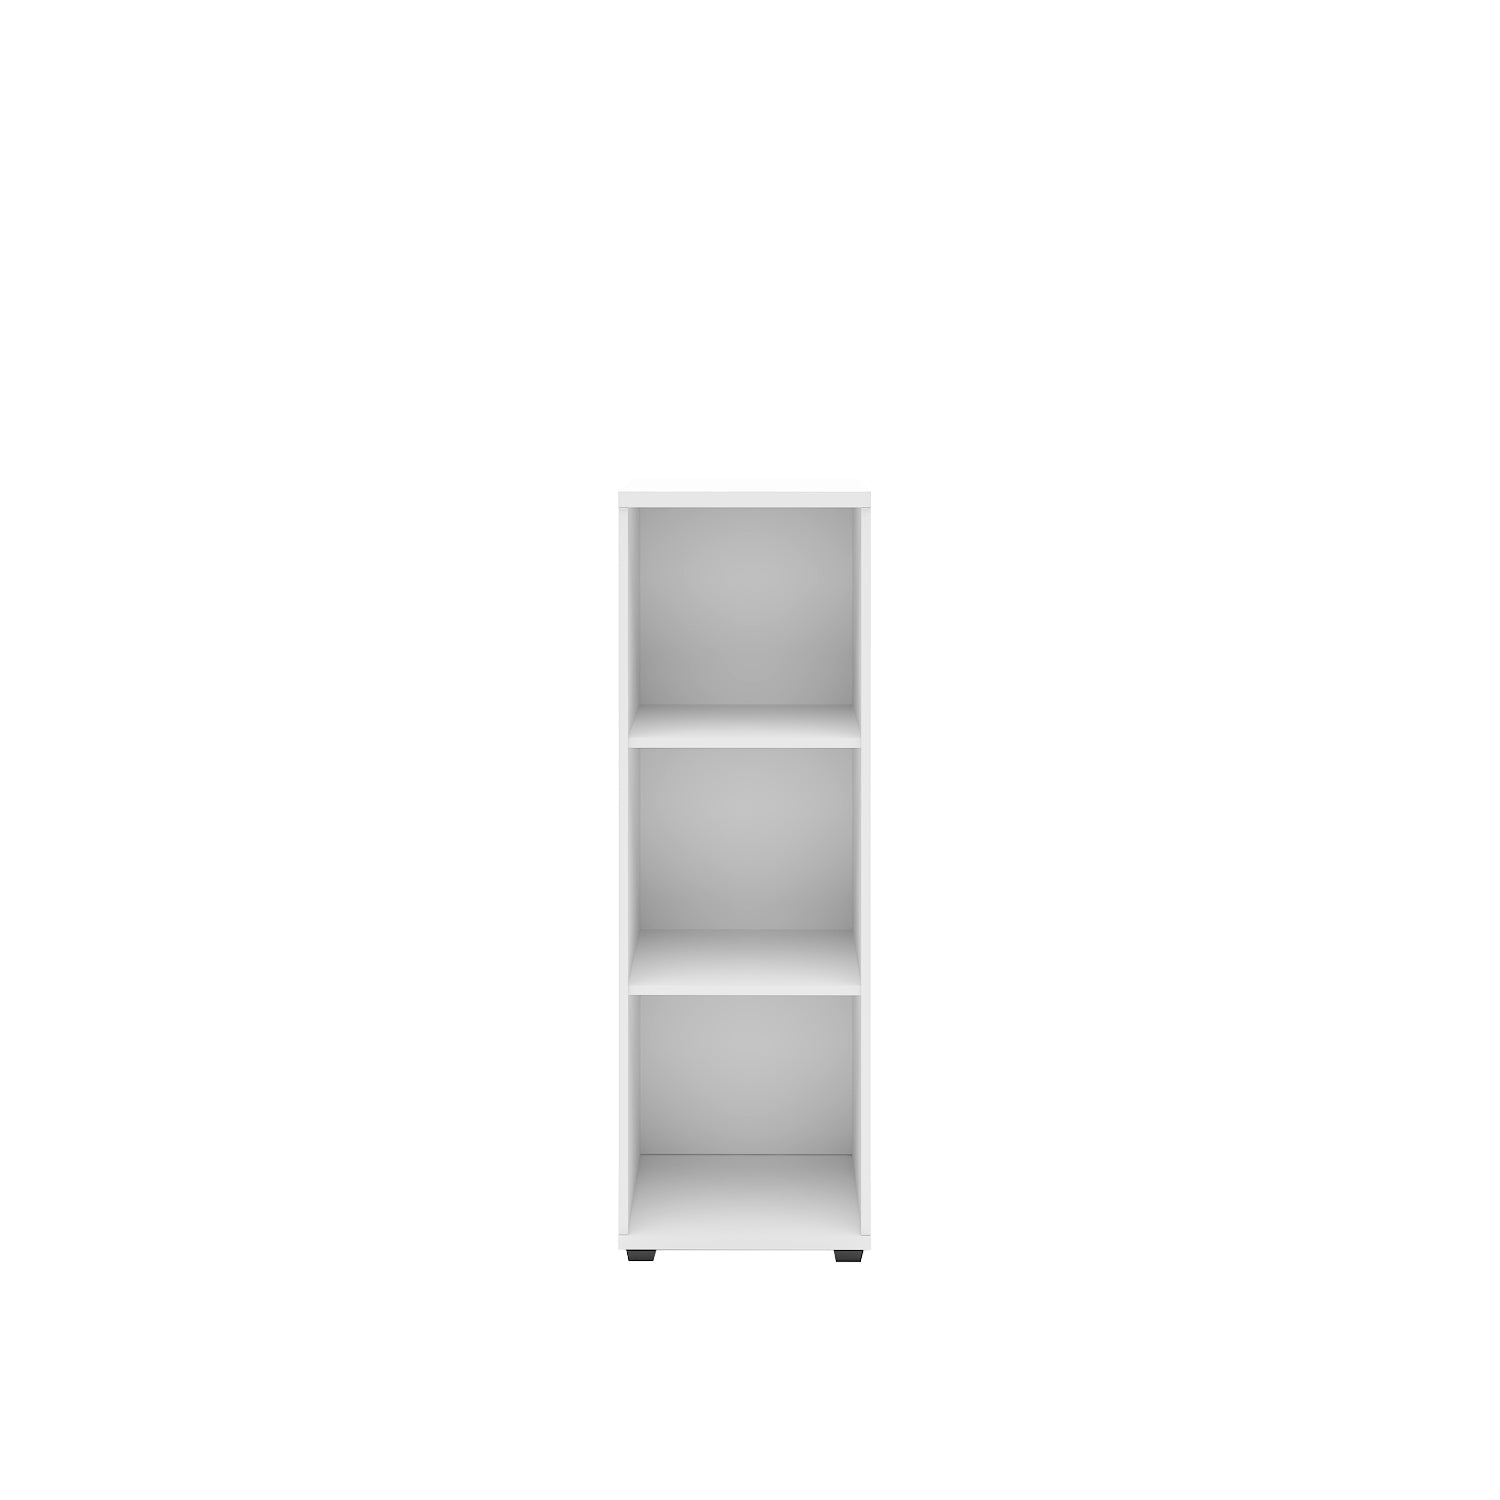 Gabinete Medio S/ Puertas 40x40x120 - Form Design - Muebles Complementos